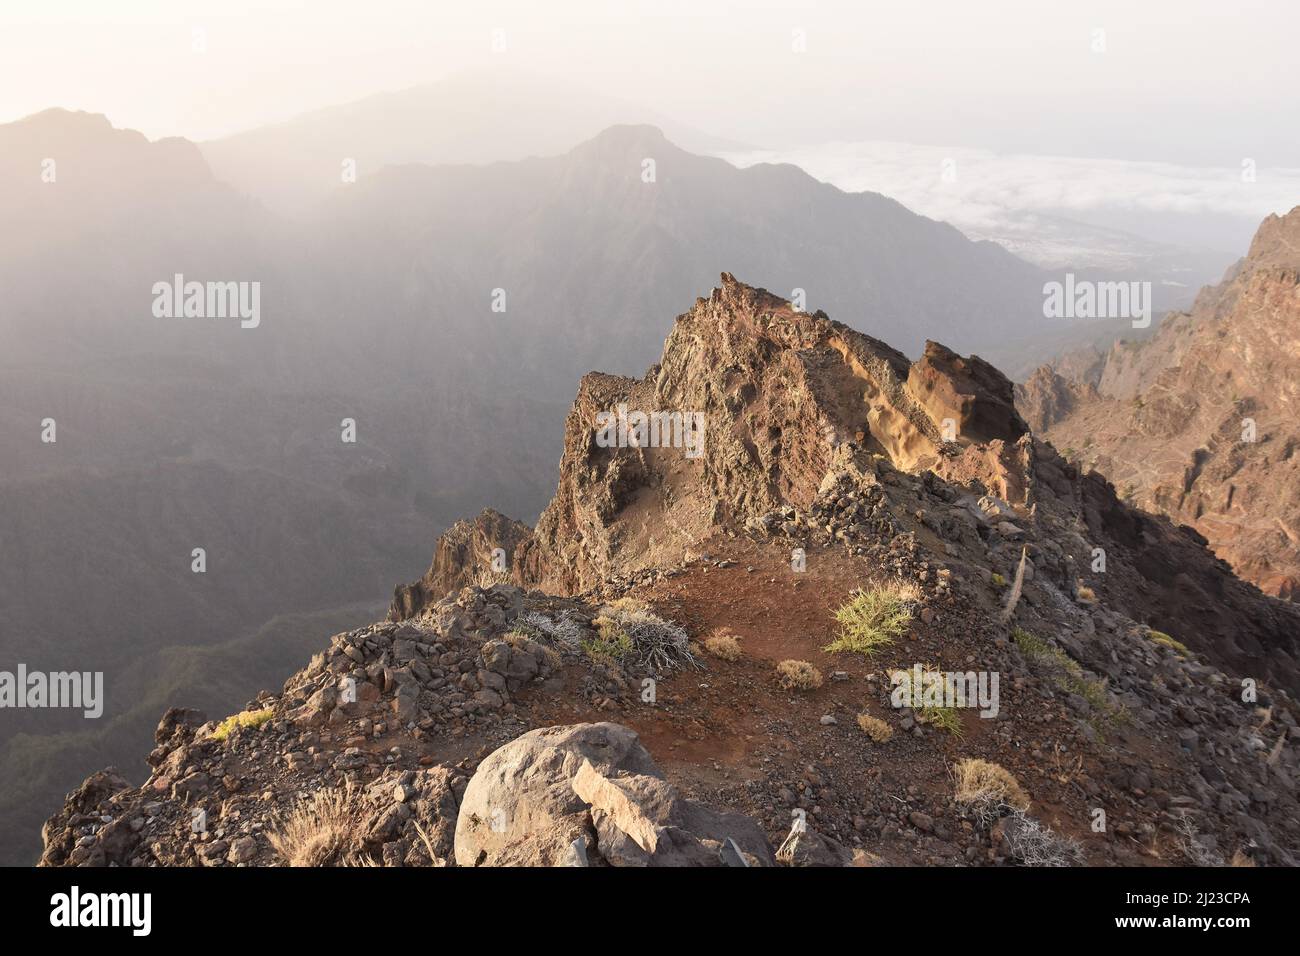 Roque de los Muchachos, elevación de 2423m , el lugar más alto de las Islas Canarias La Palma, situado en el Parque Nacional Caldera de Taburiente. Foto de stock